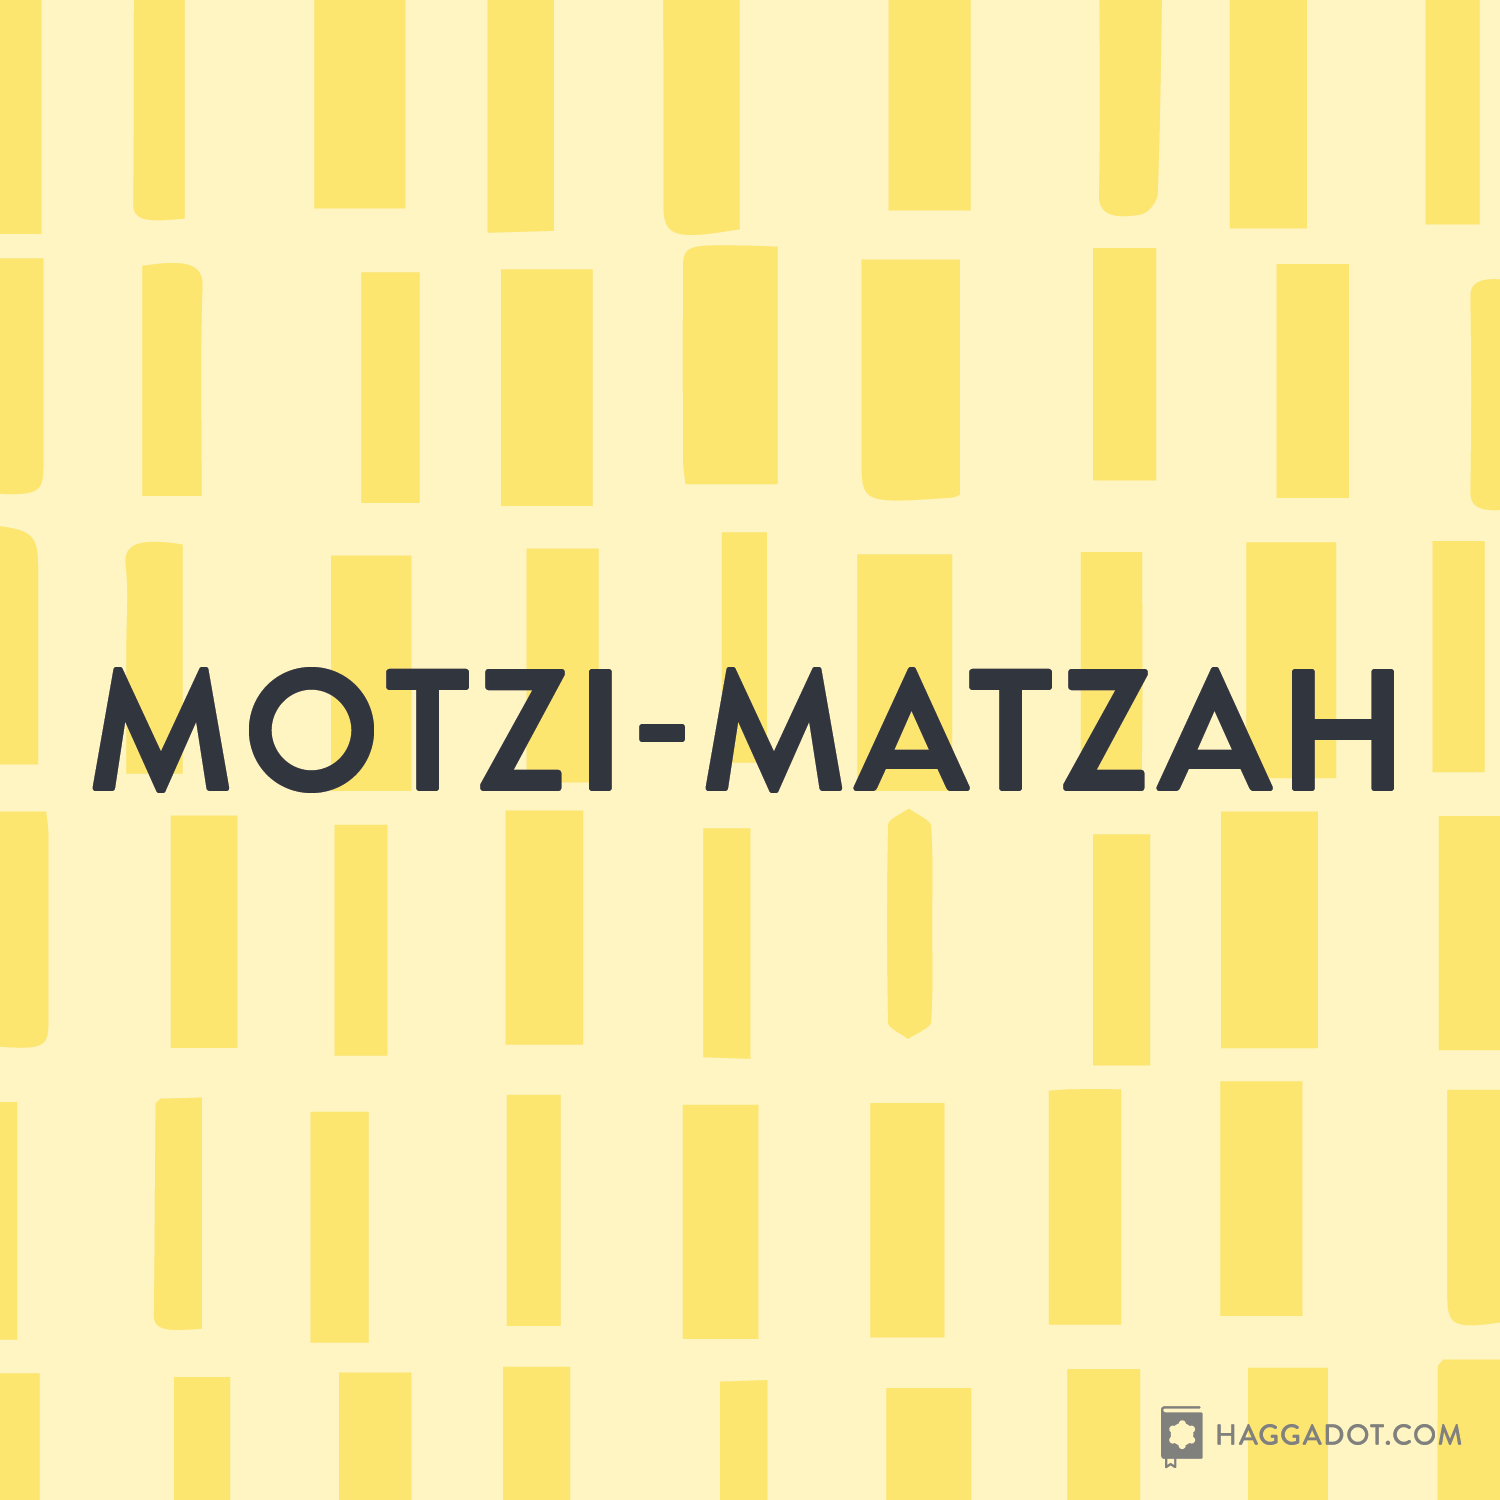 Motzi-Matzah